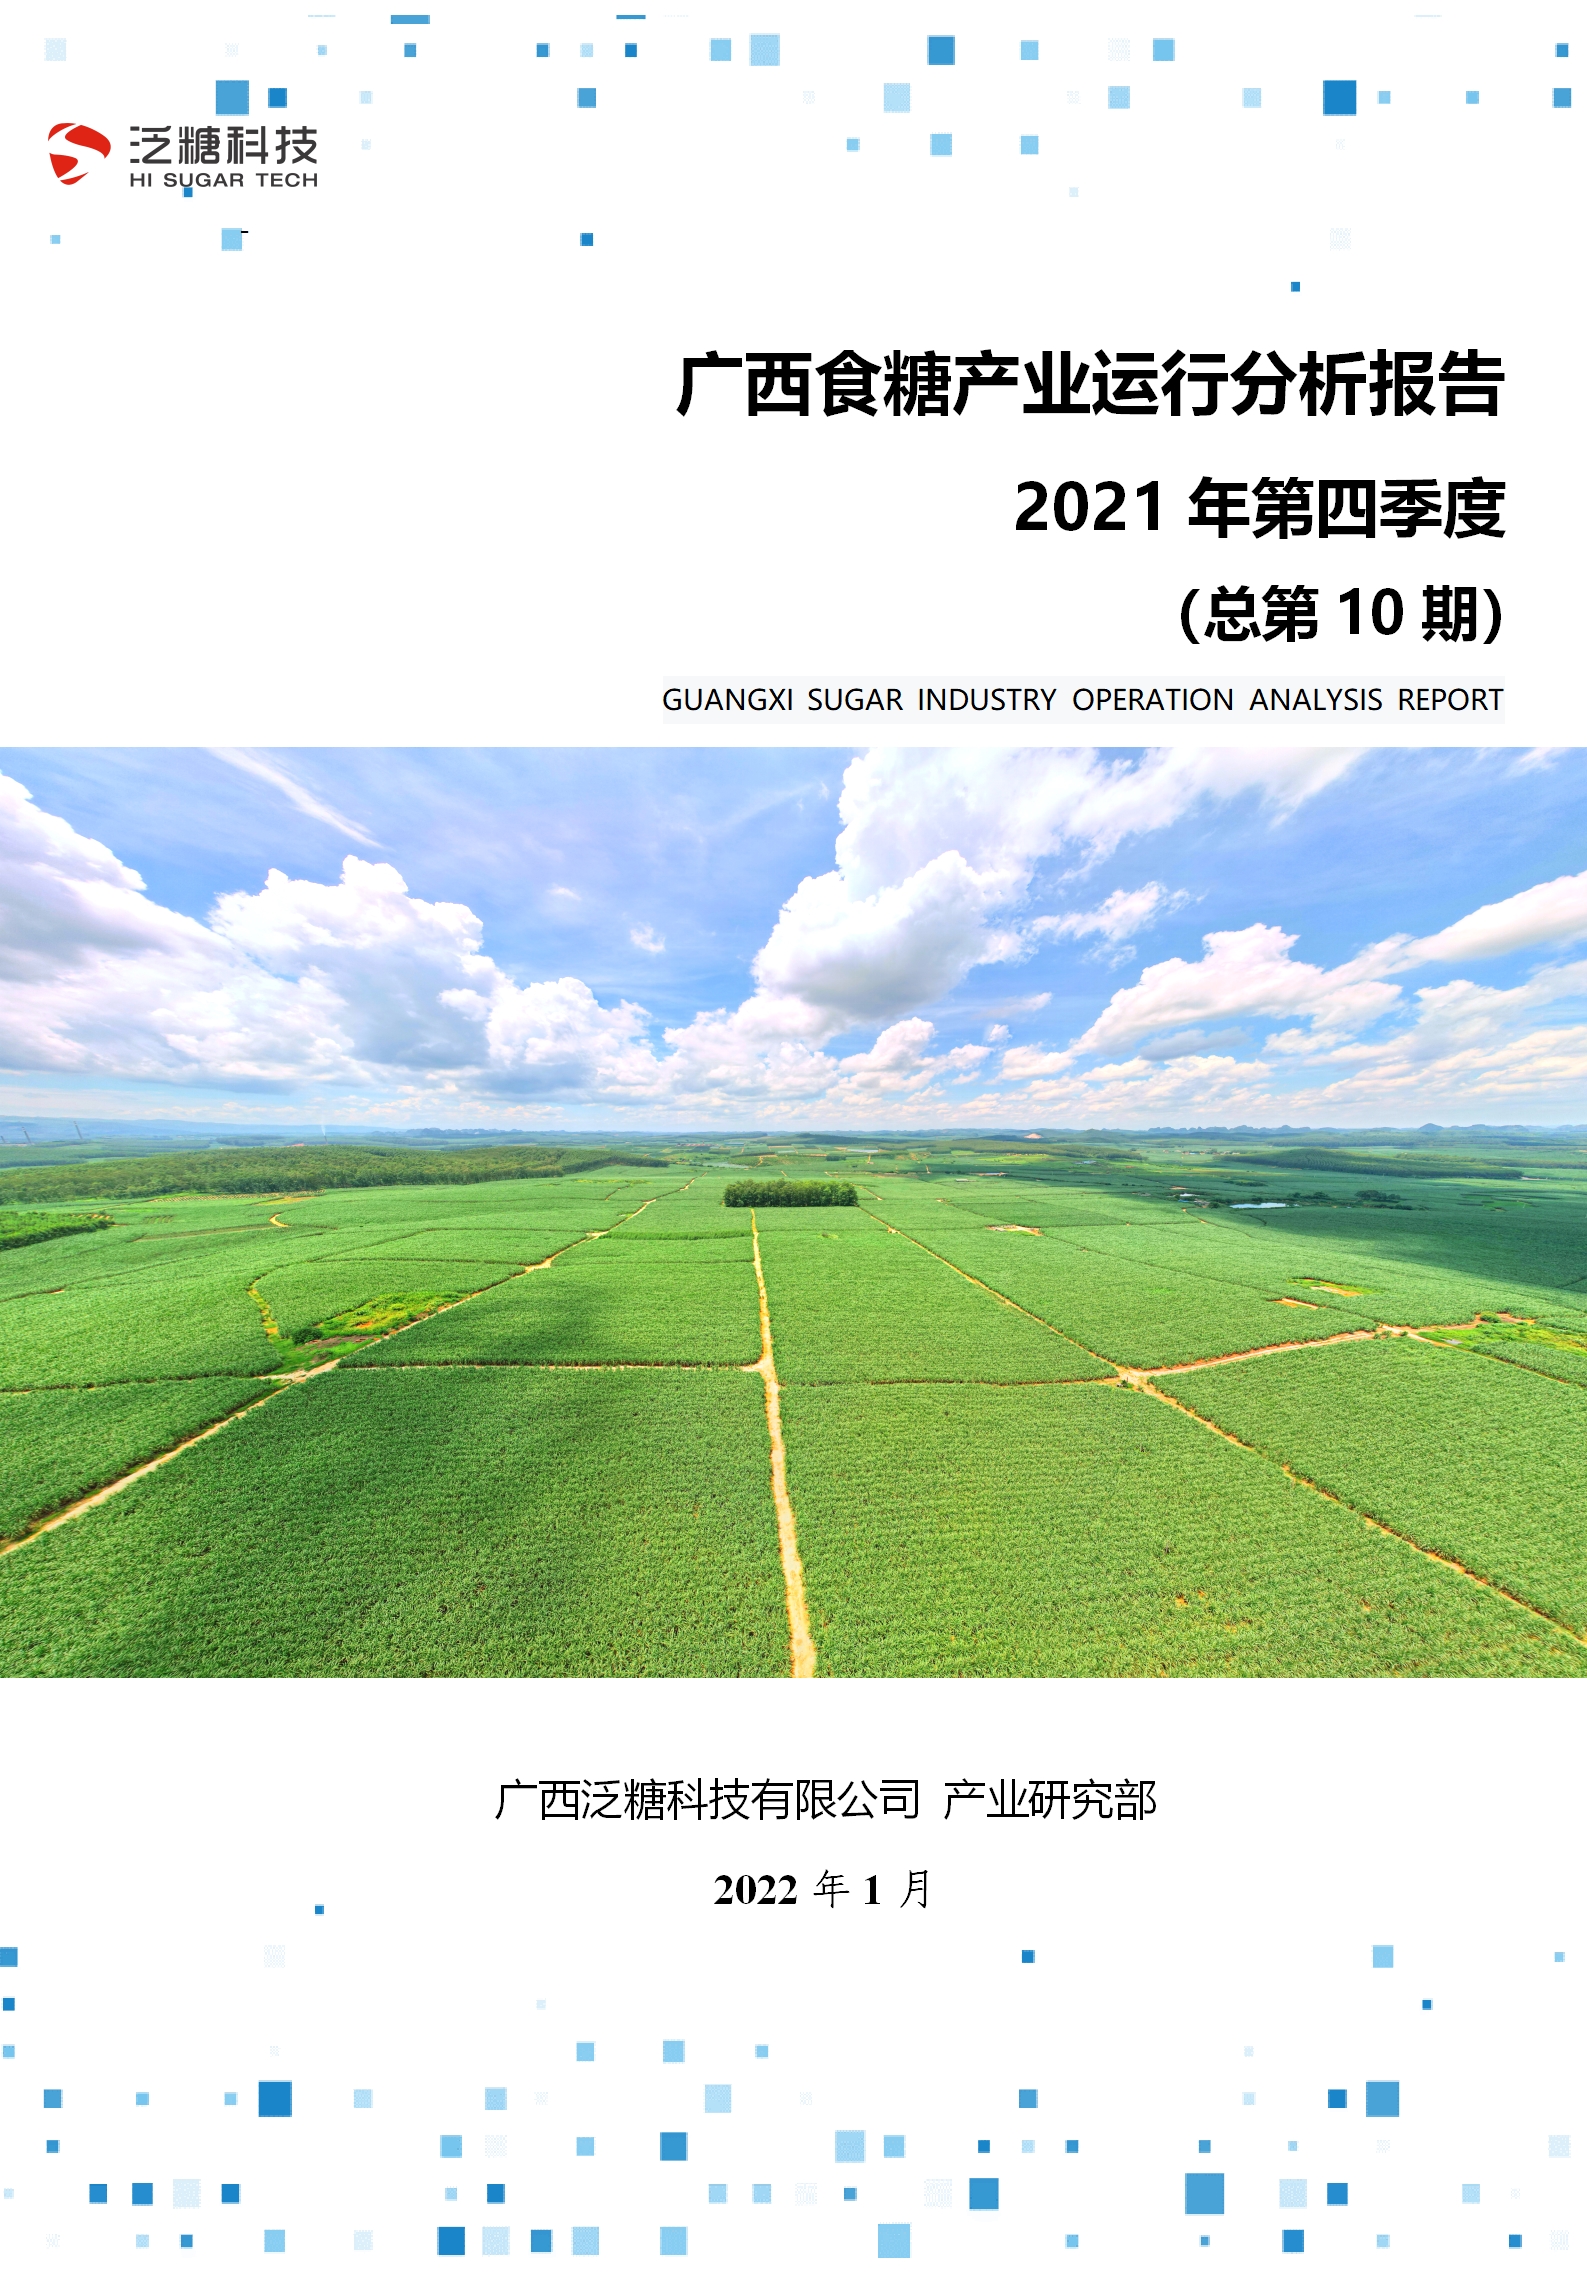 广西食糖产业运行分析报告（2021年第四季度）(1)_毒霸看图.jpg